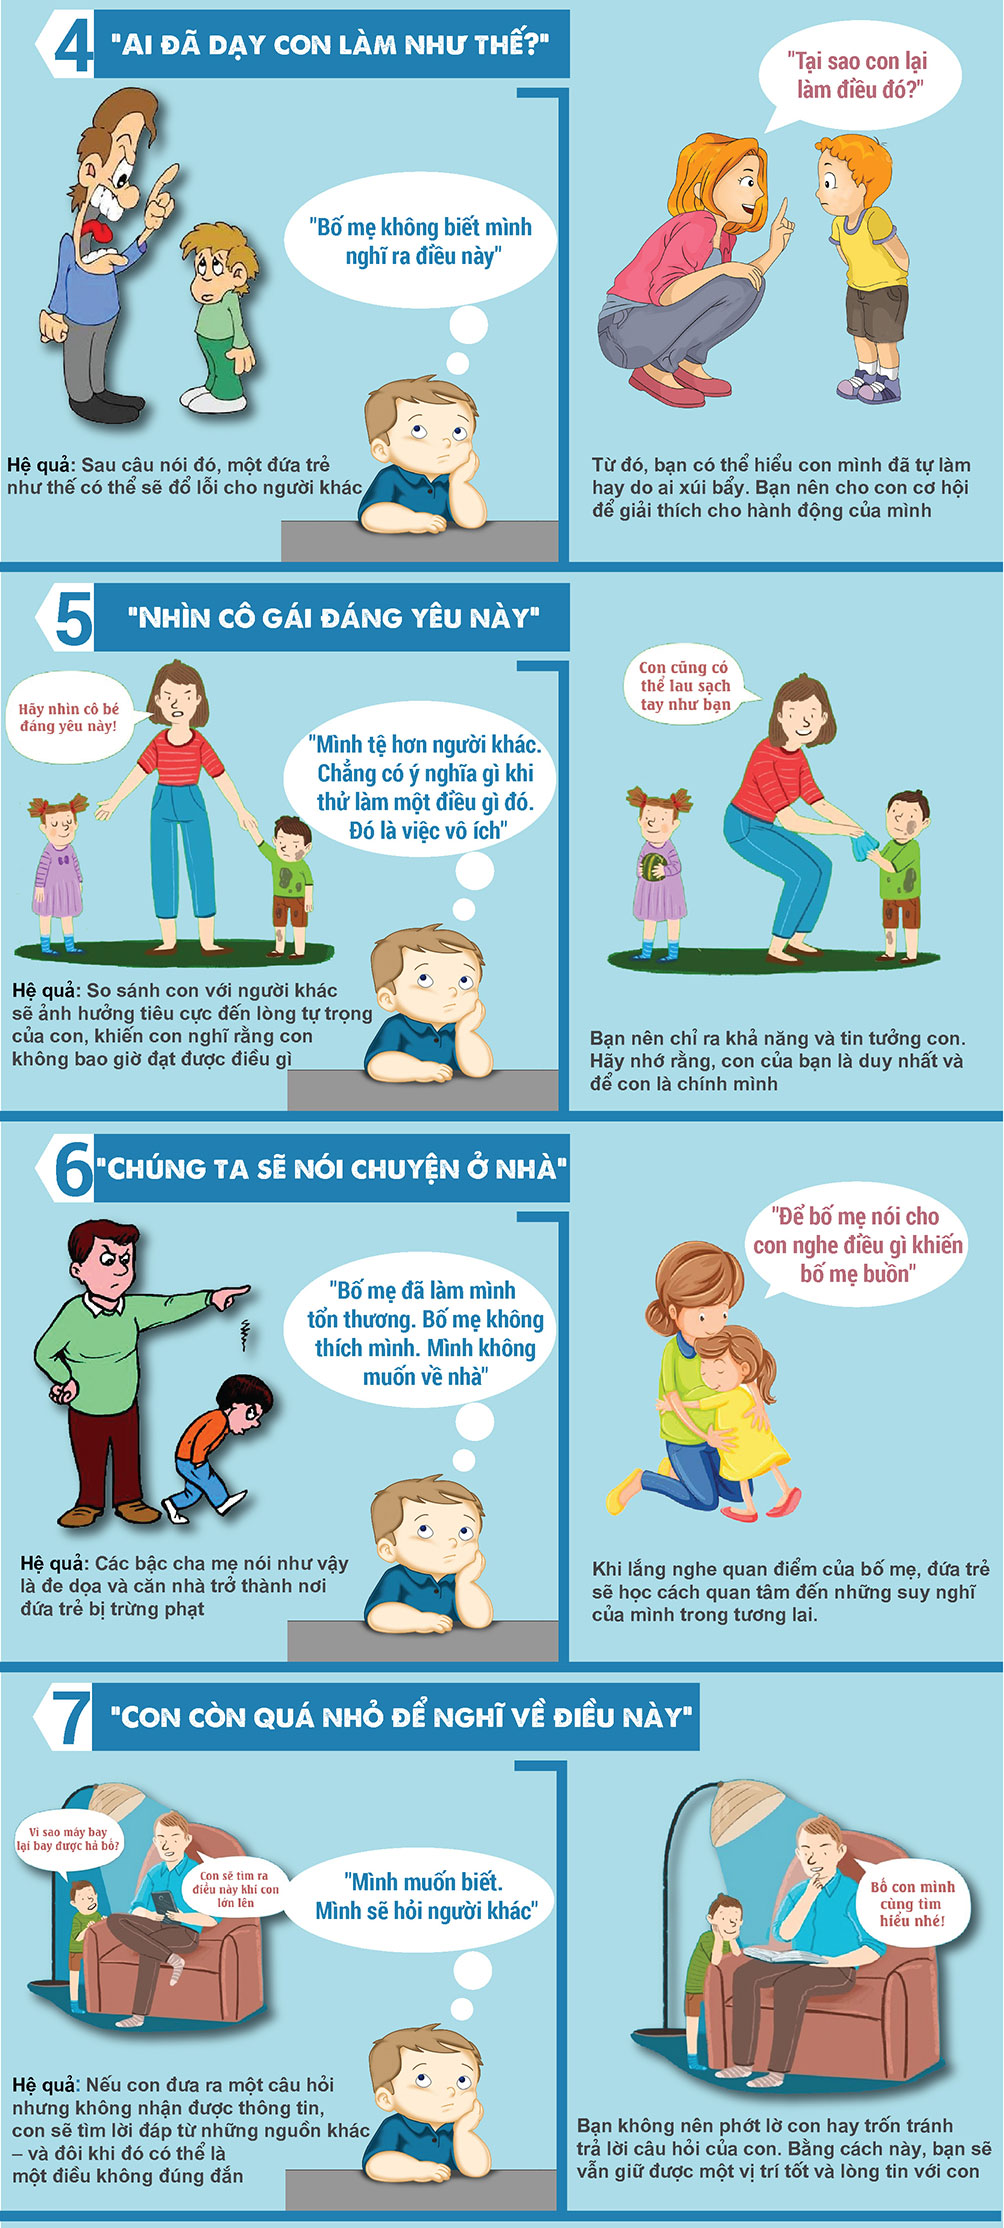 7 điều cha mẹ tuyệt đối tránh nói làm tổn thương trẻ 2